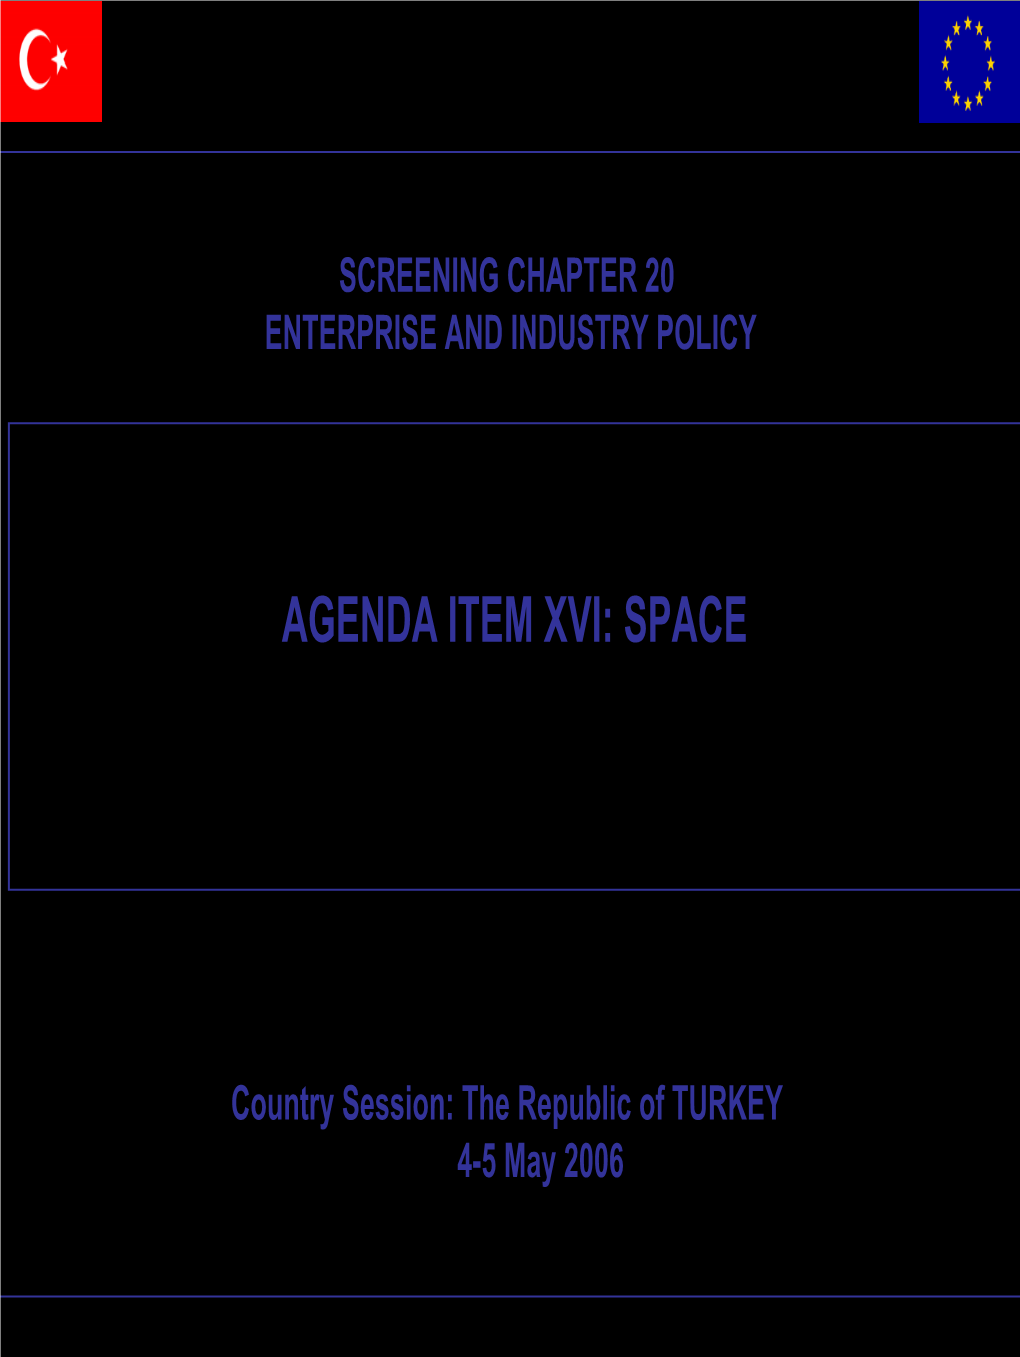 Agenda Item Xvi: Space